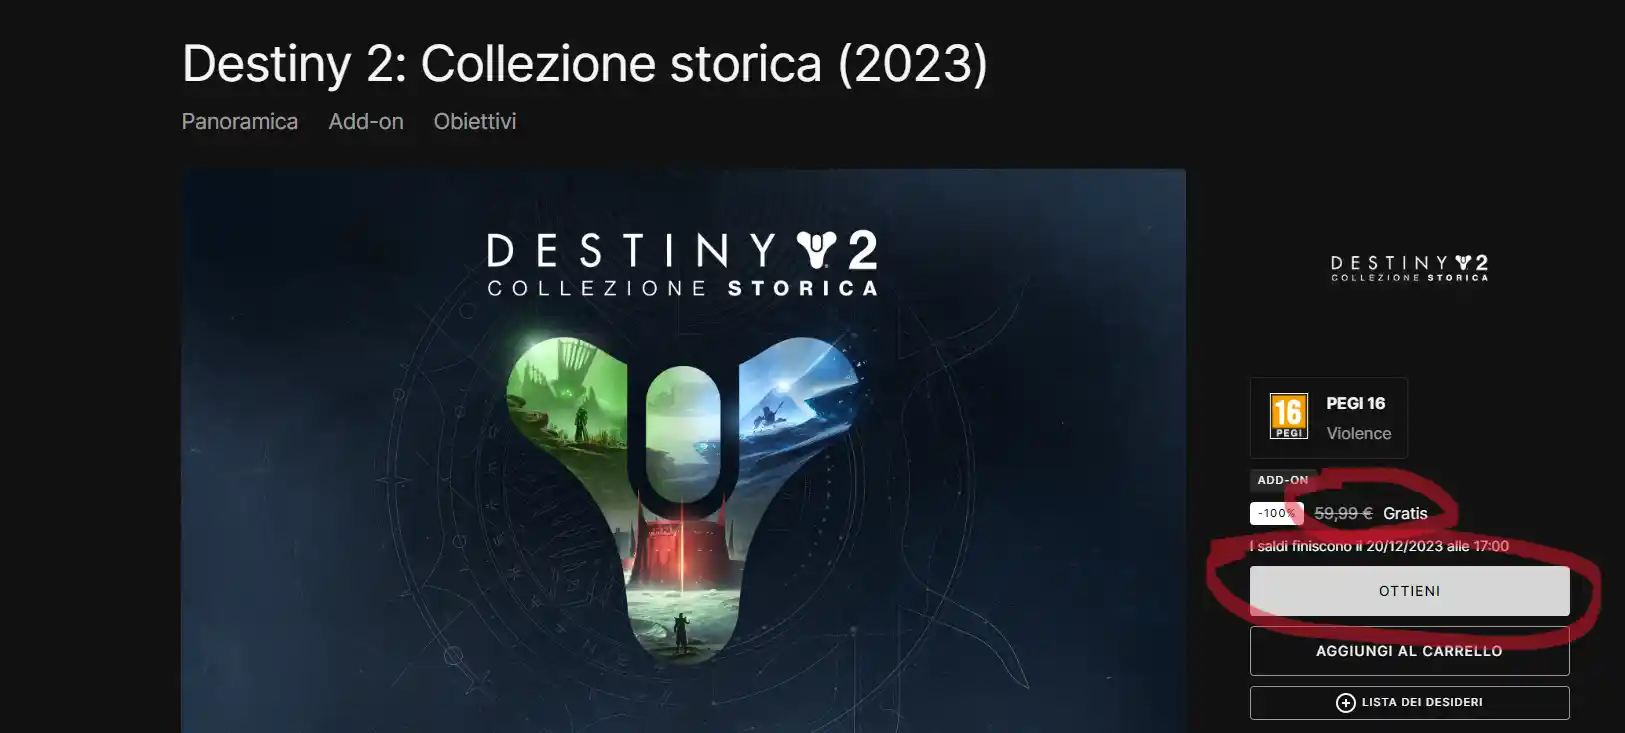 La nuova missione esotica di Destiny 2, "Sotto contraria stella", è disponibile - riscattate il gioco più due espansioni gratis entro oggi su Epic Games Store